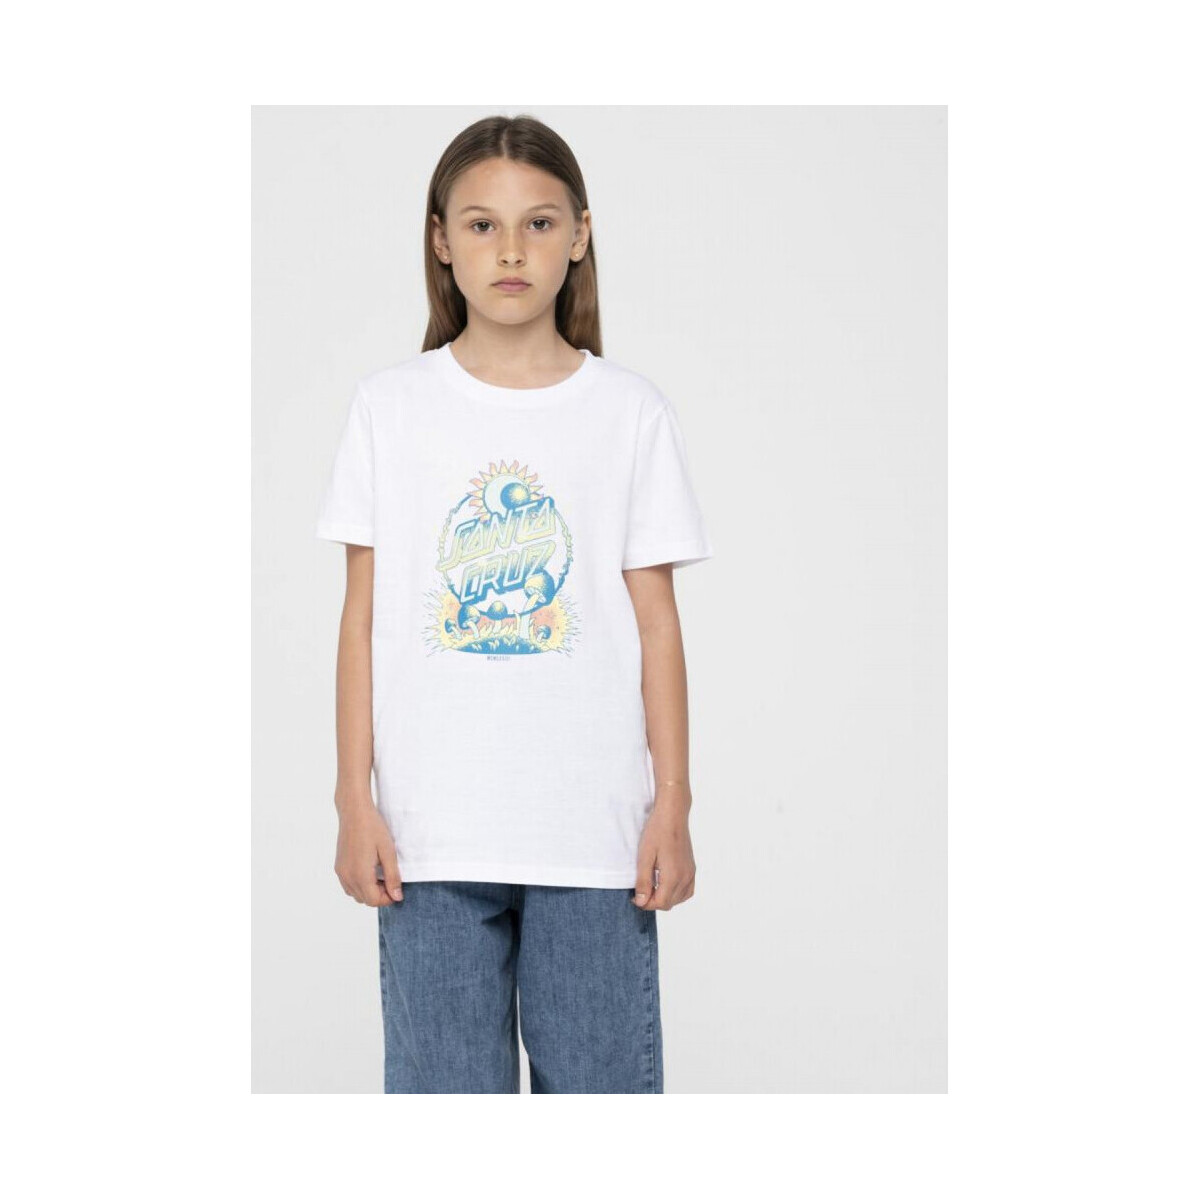 textil Niños Tops y Camisetas Santa Cruz Dark arts dot front t-shirt Blanco